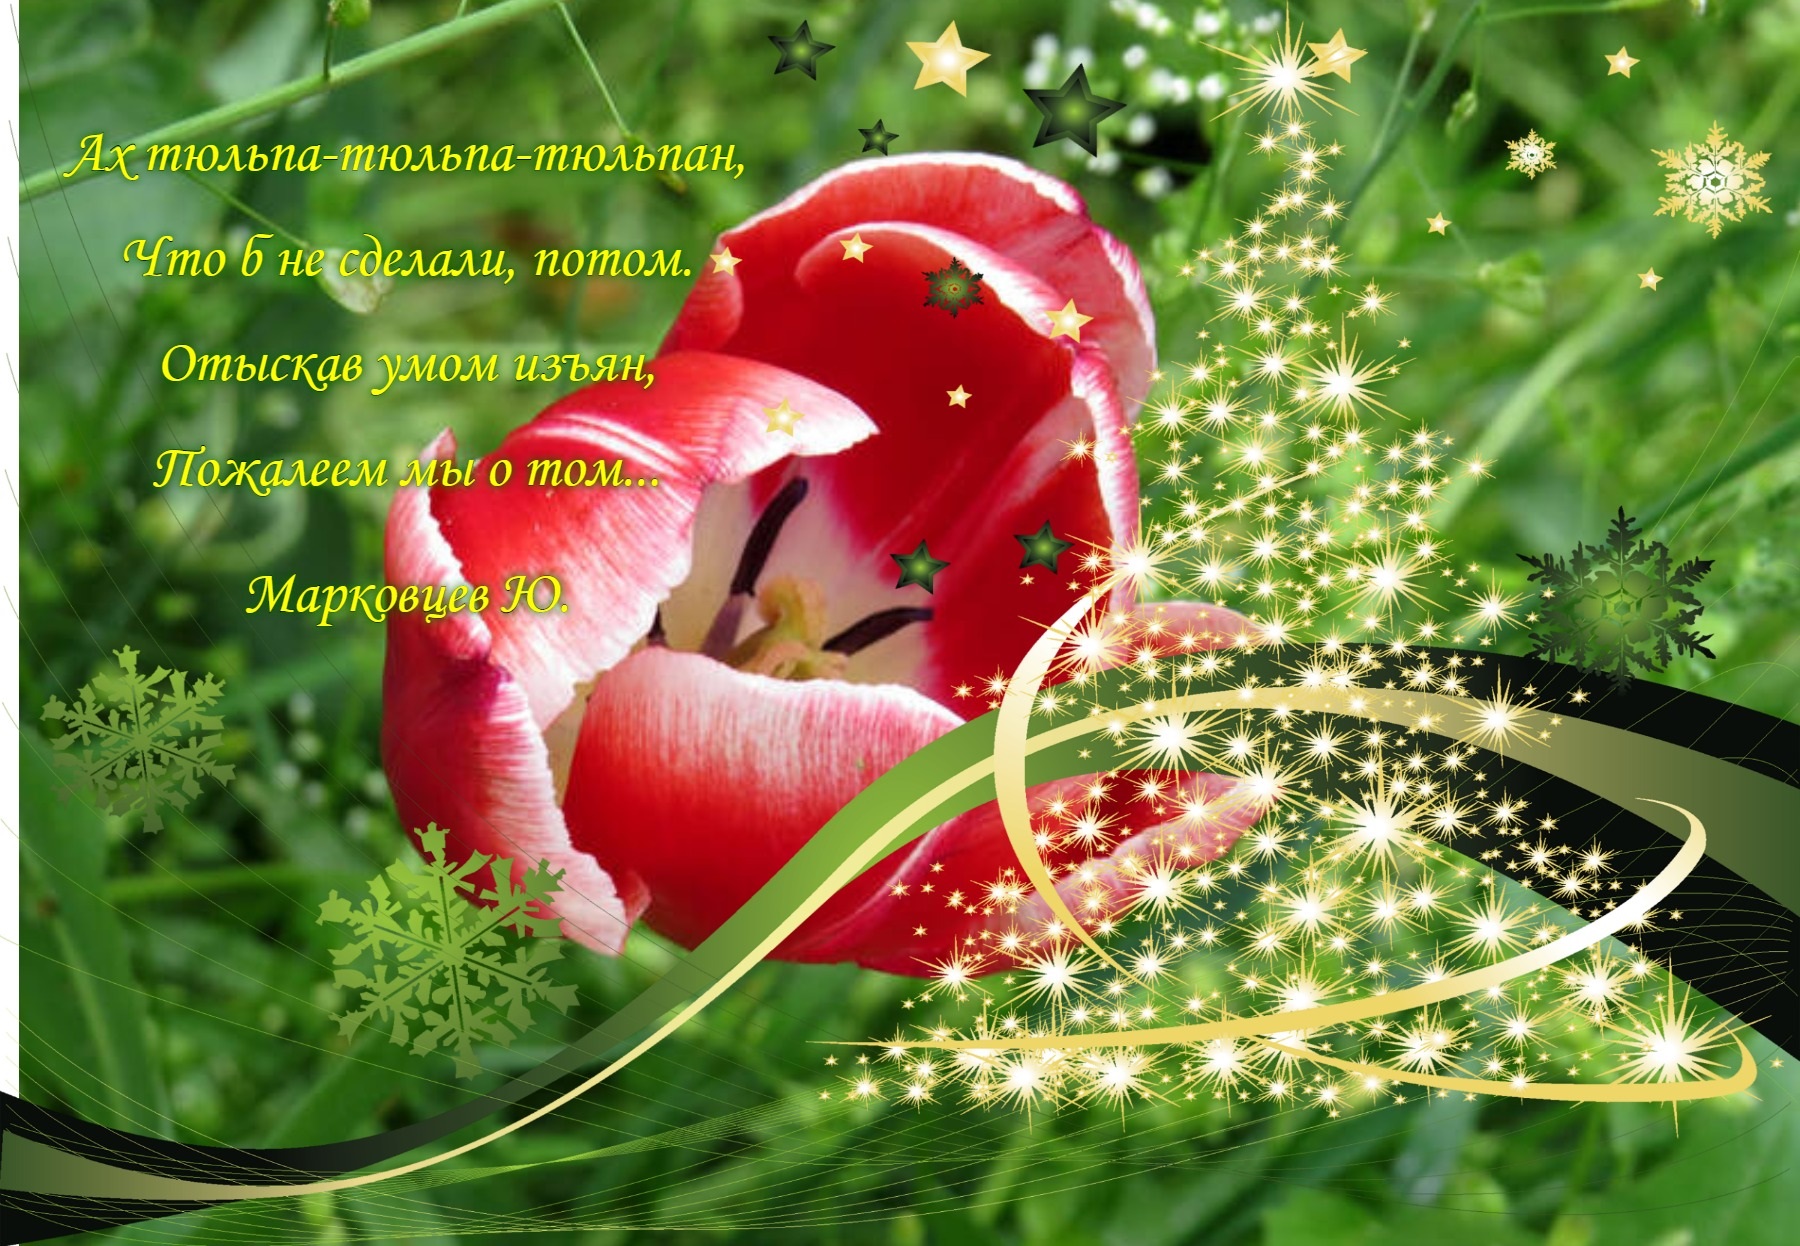 Стихи про тюльпаны и весну. Стихи про тюльпаны. Красивые стихи про тюльпаны и весну. Весной тюльпаны стихи.